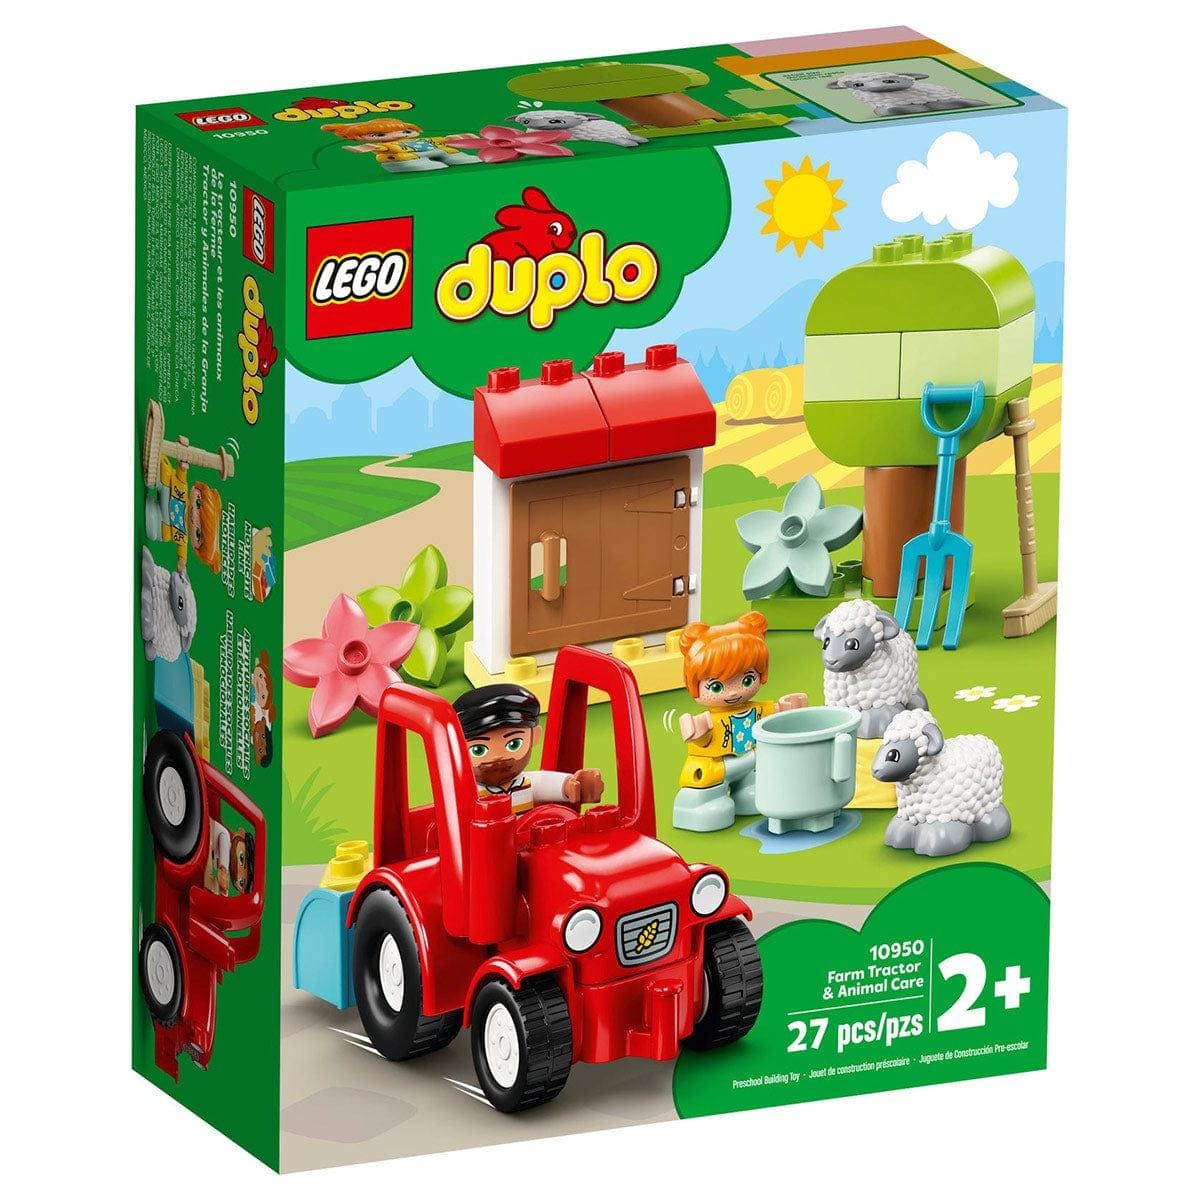 LEGO 10956 Duplo Town Le Parc d'Attractions Jouet Enfant 2+ Ans